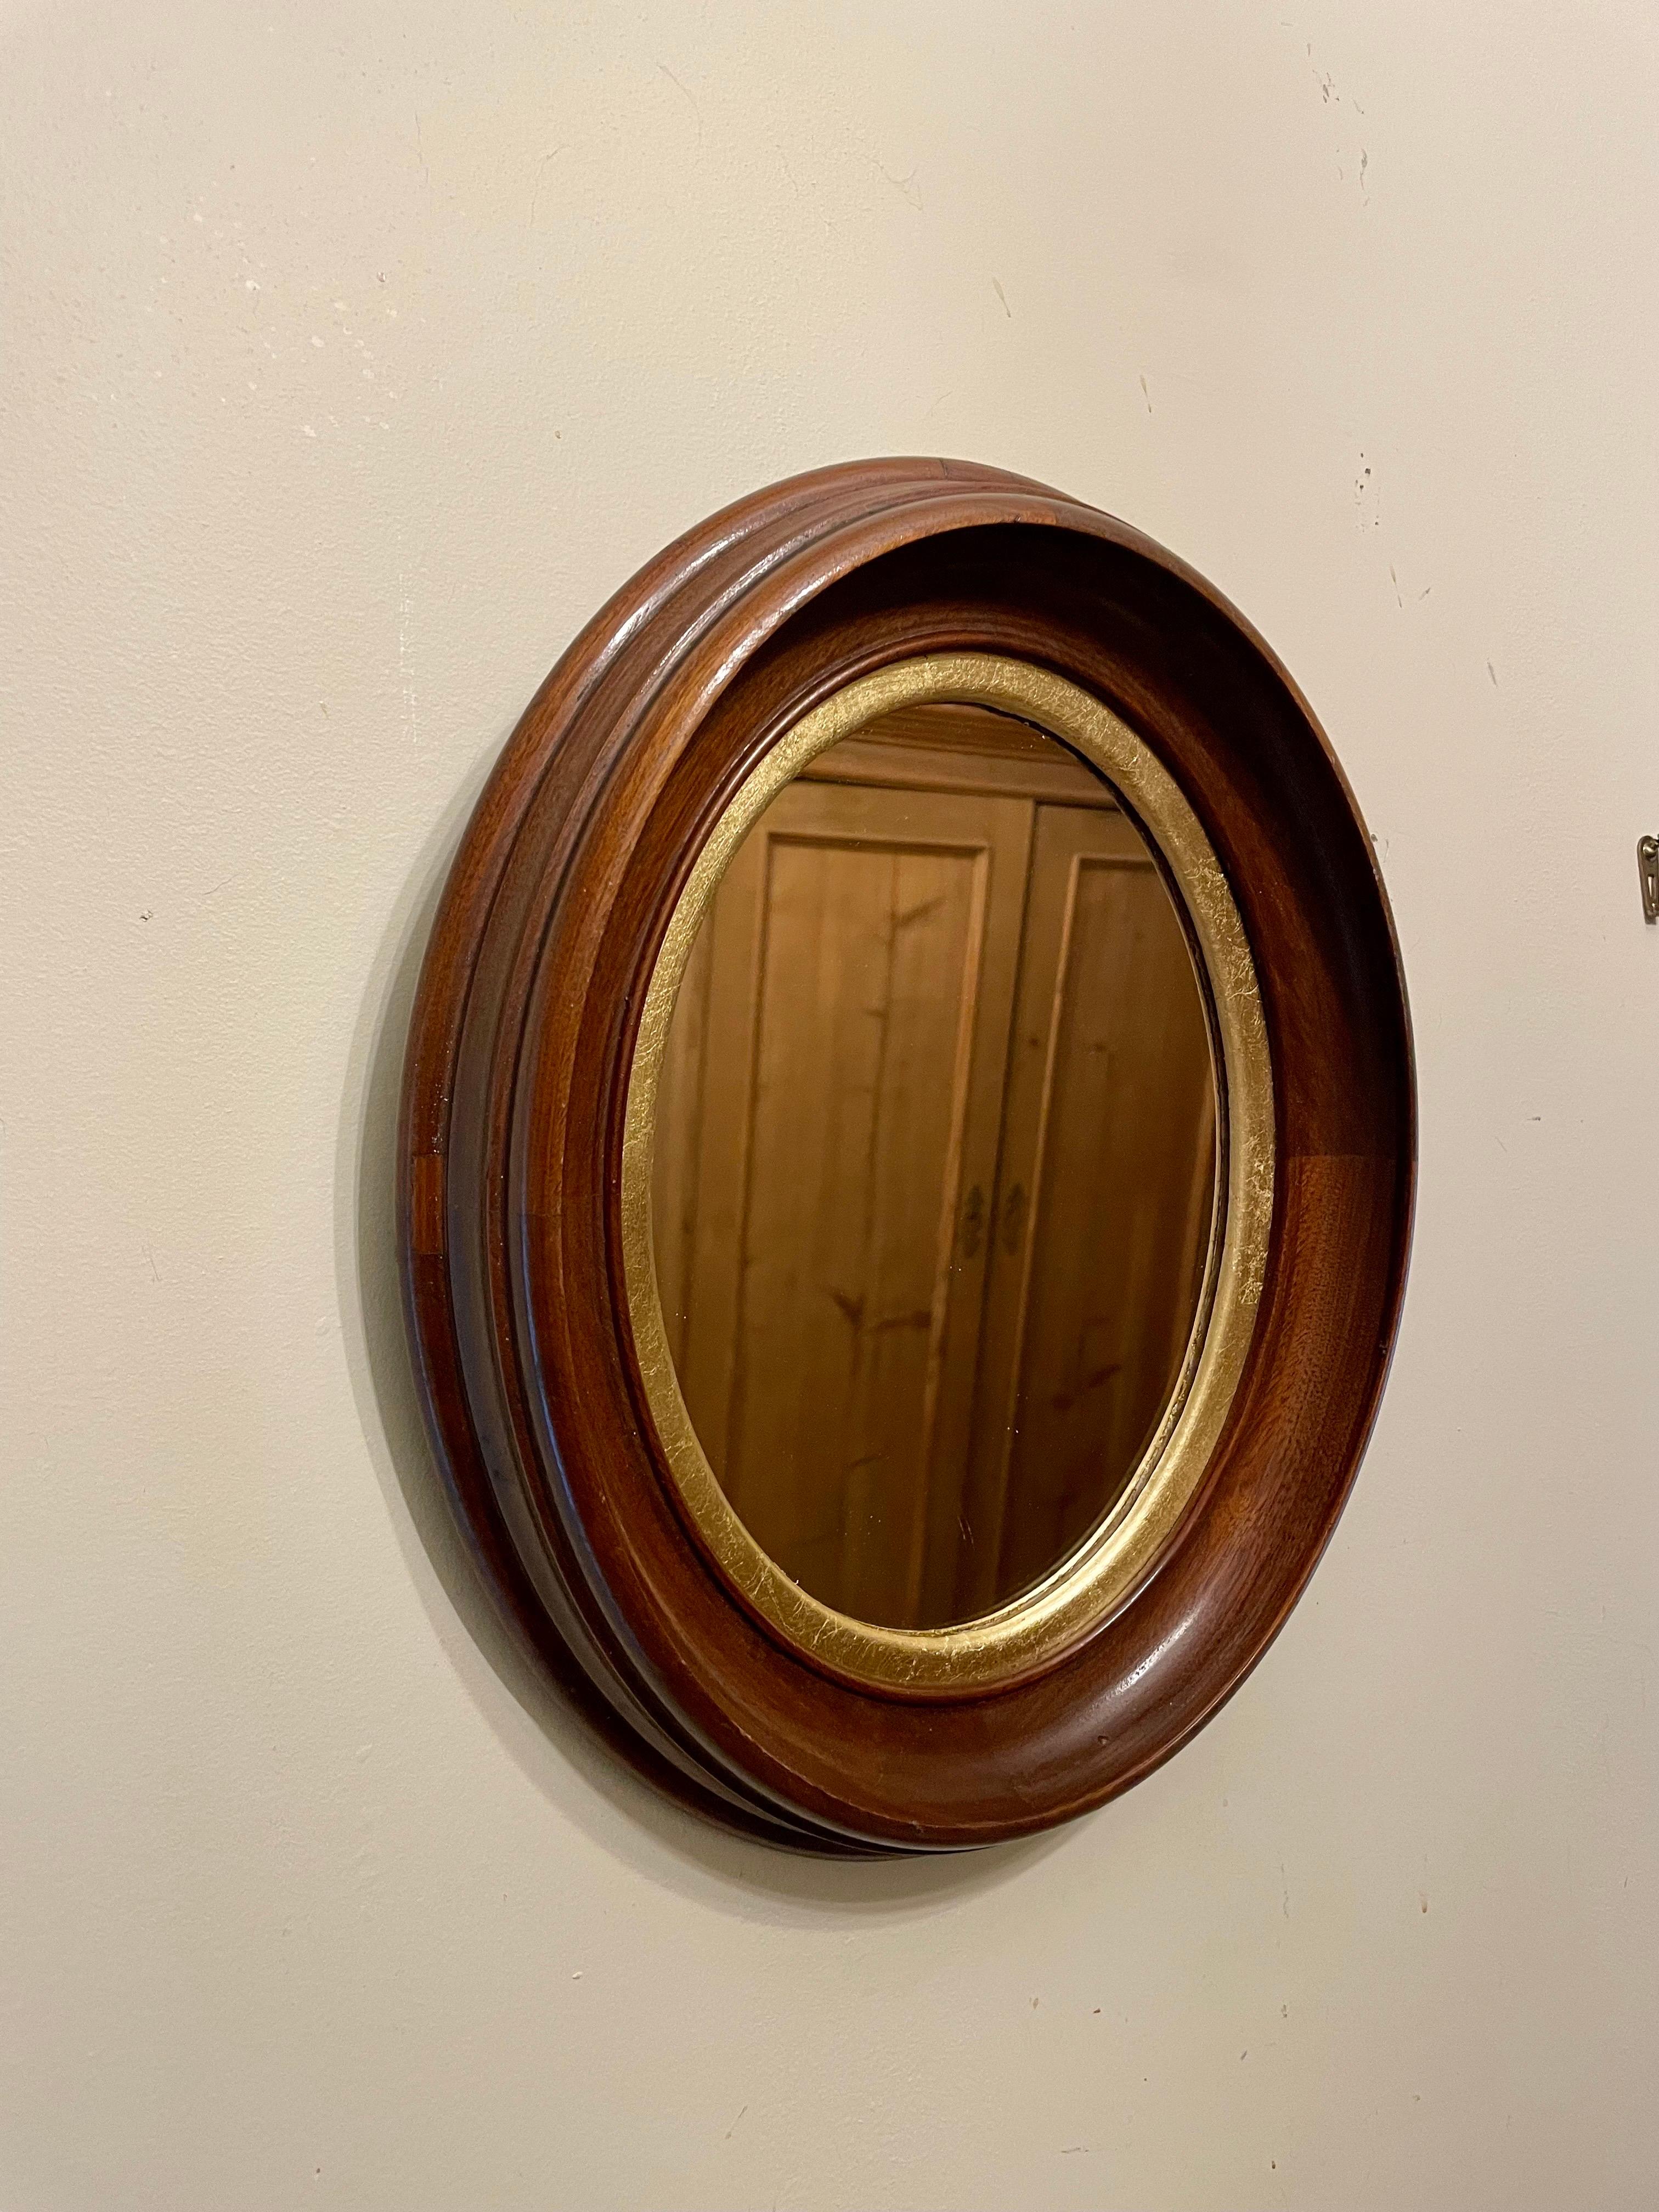 Joli miroir ovale ancien en noyer massif et cadre doré. 13